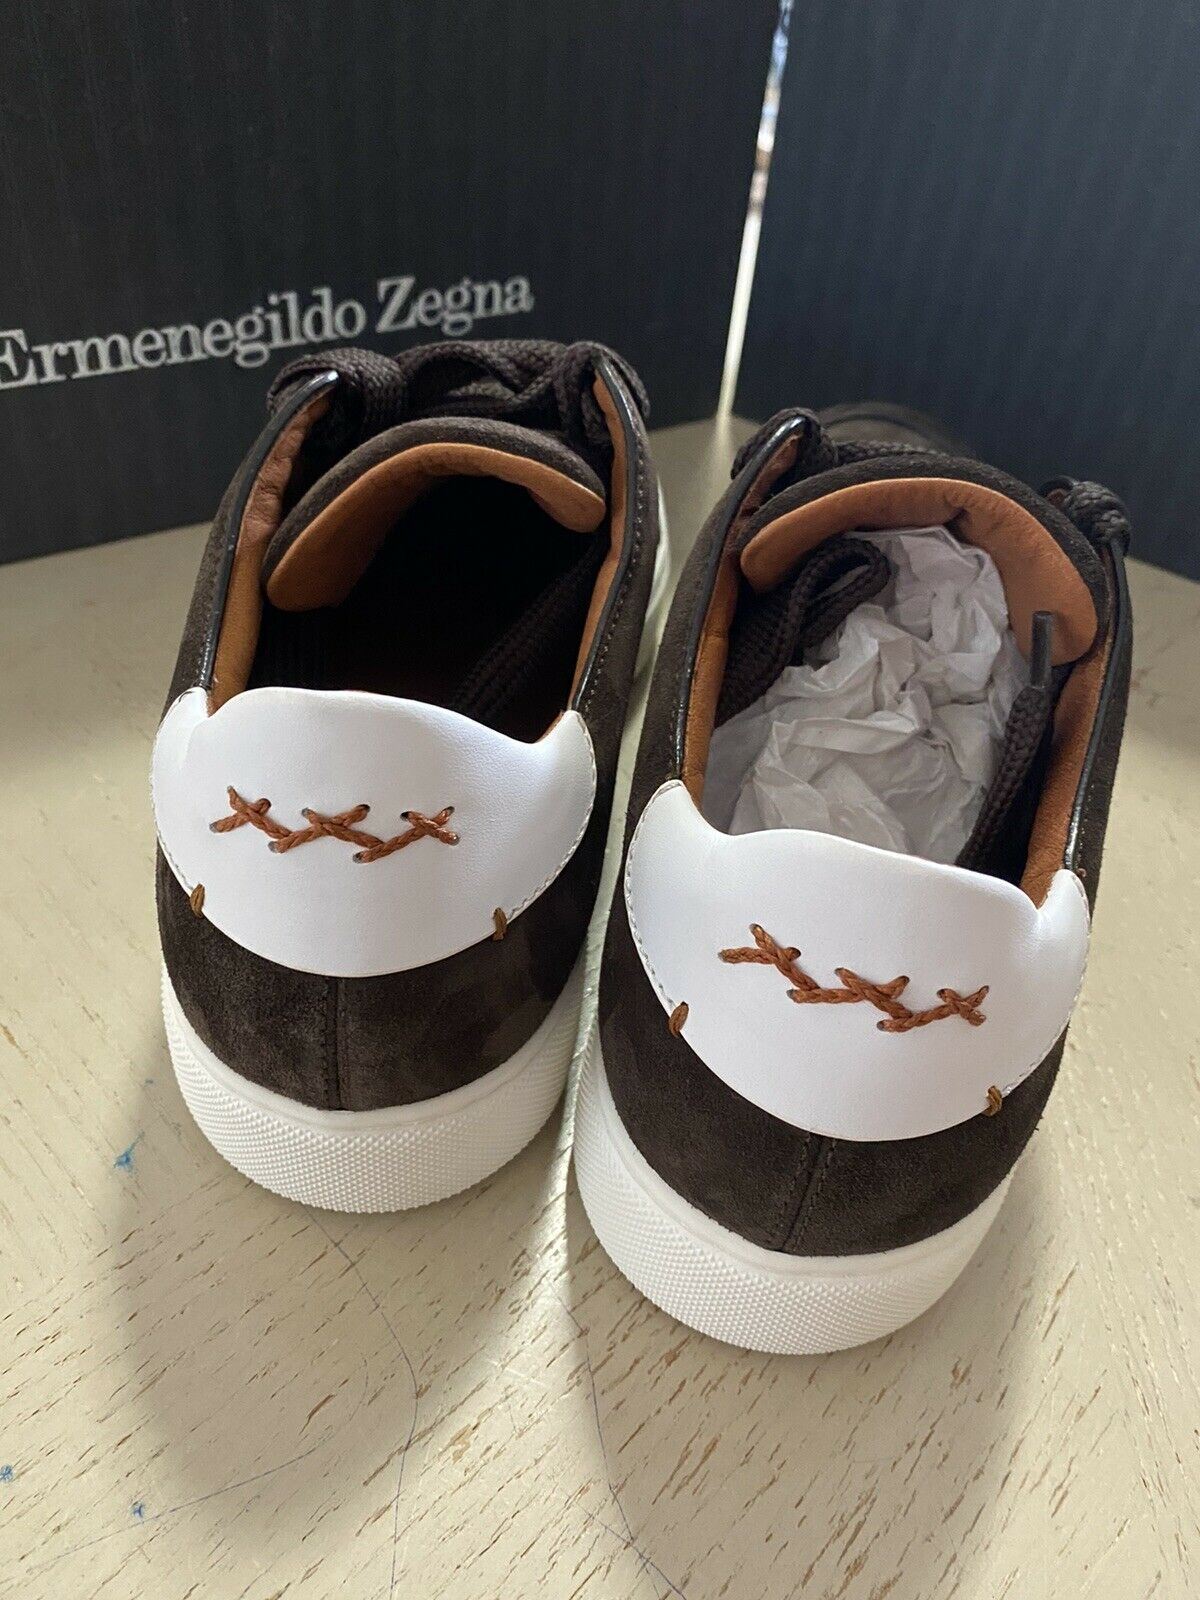 Новые замшевые/кожаные кроссовки Ermenegildo Zegna Couture за 850 долларов США Темно-коричневые 10 США